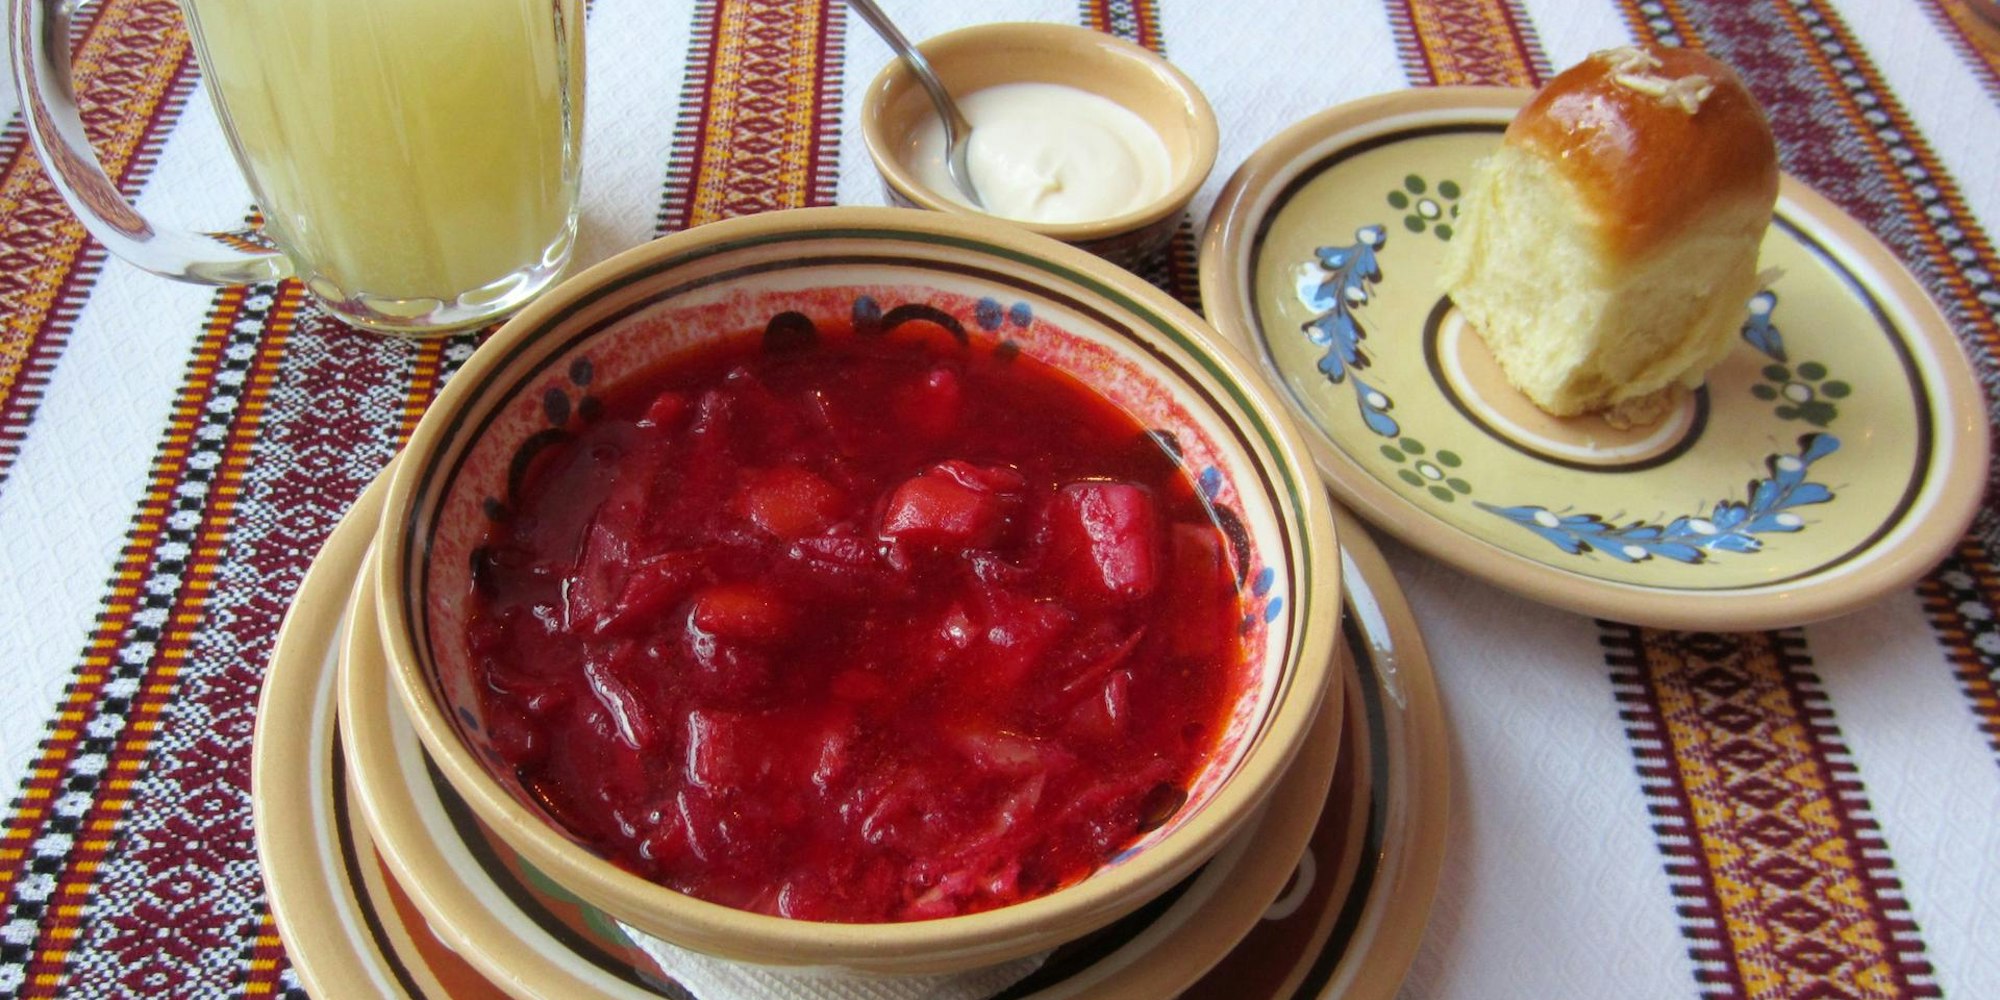 borschtscht auf tischdecke russisch essen symbol dpa